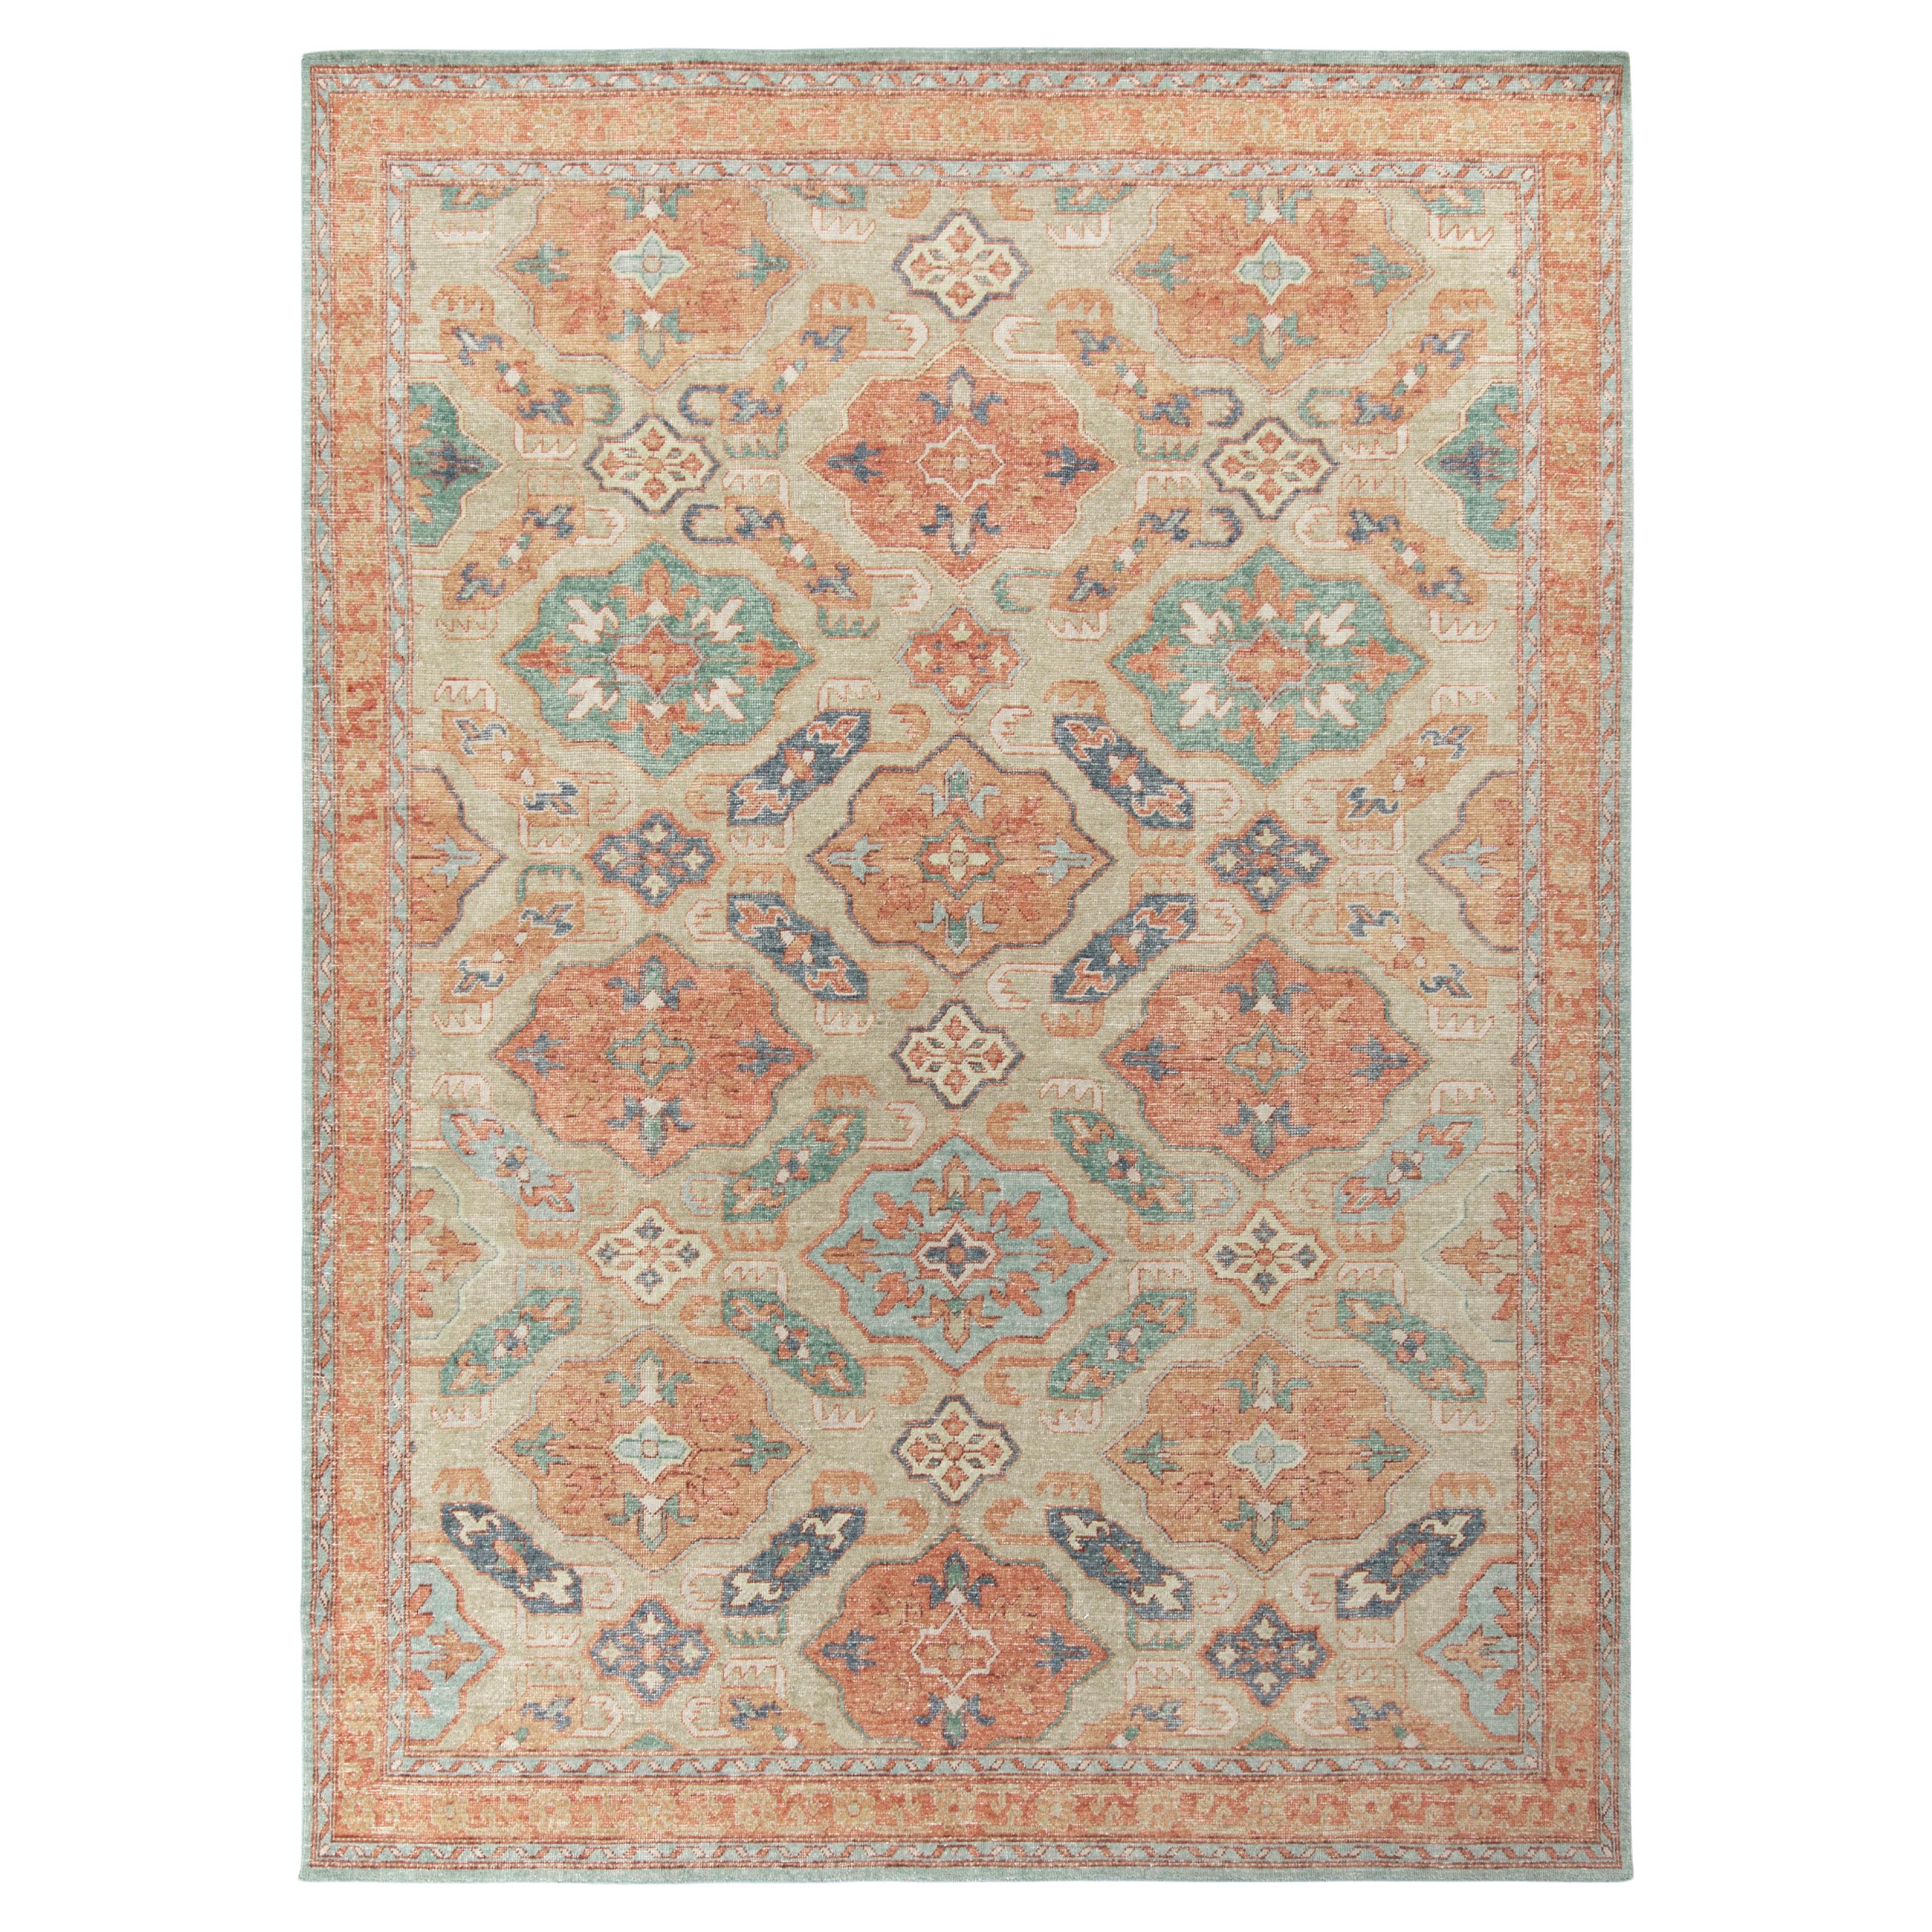 Teppich & Kilims Distressed Style, maßgefertigter Teppich in Beige, Orange mit geometrischem Muster